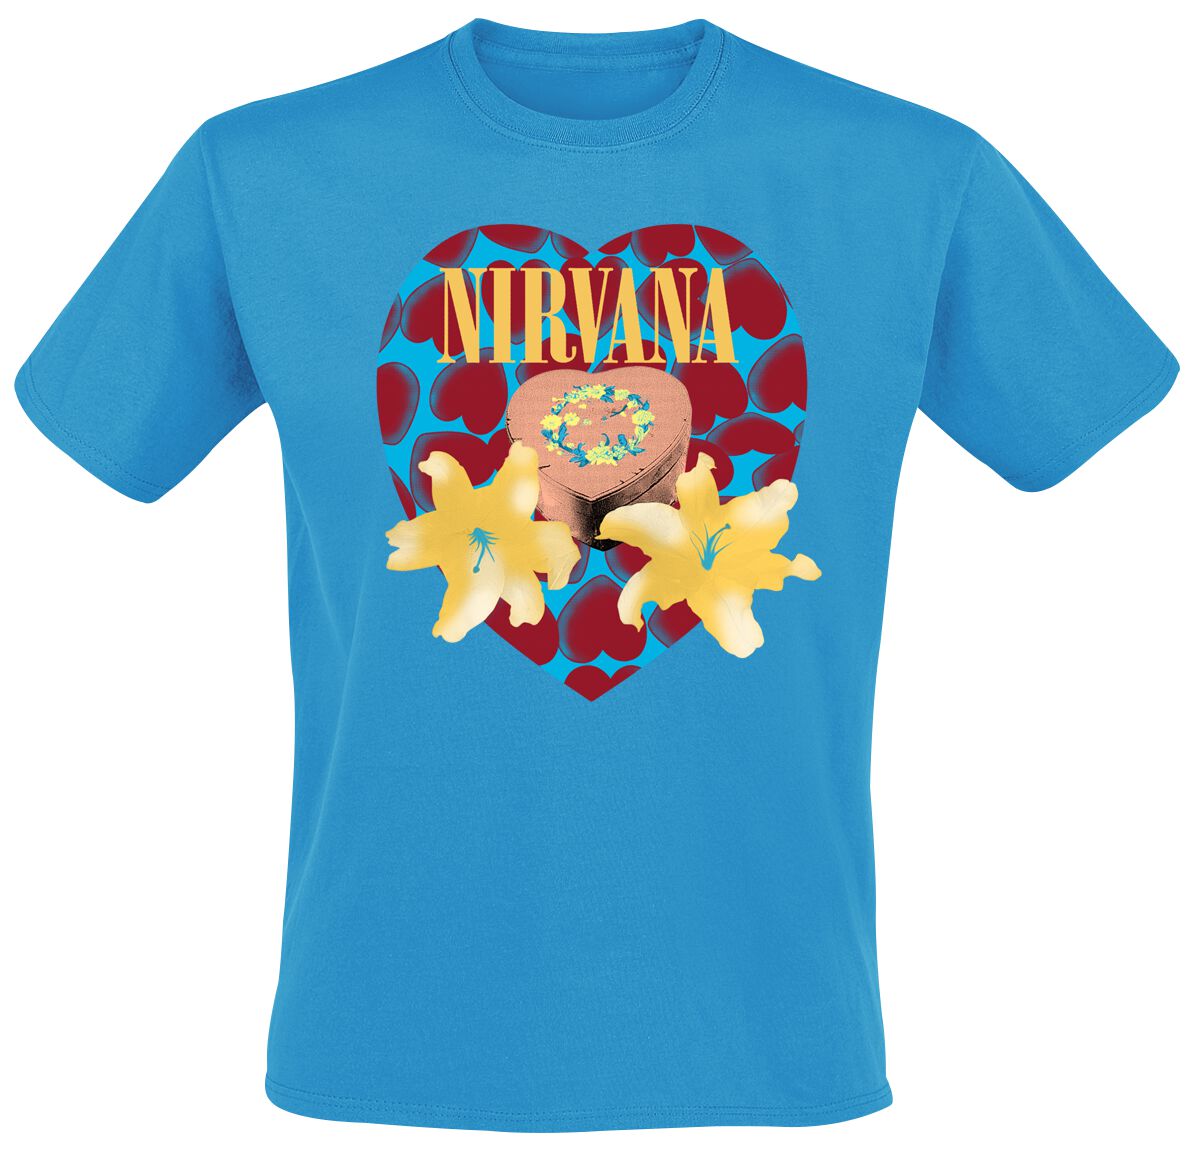 Nirvana T-Shirt - Flower Heart - S bis 3XL - für Männer - Größe 3XL - blau  - Lizenziertes Merchandise!